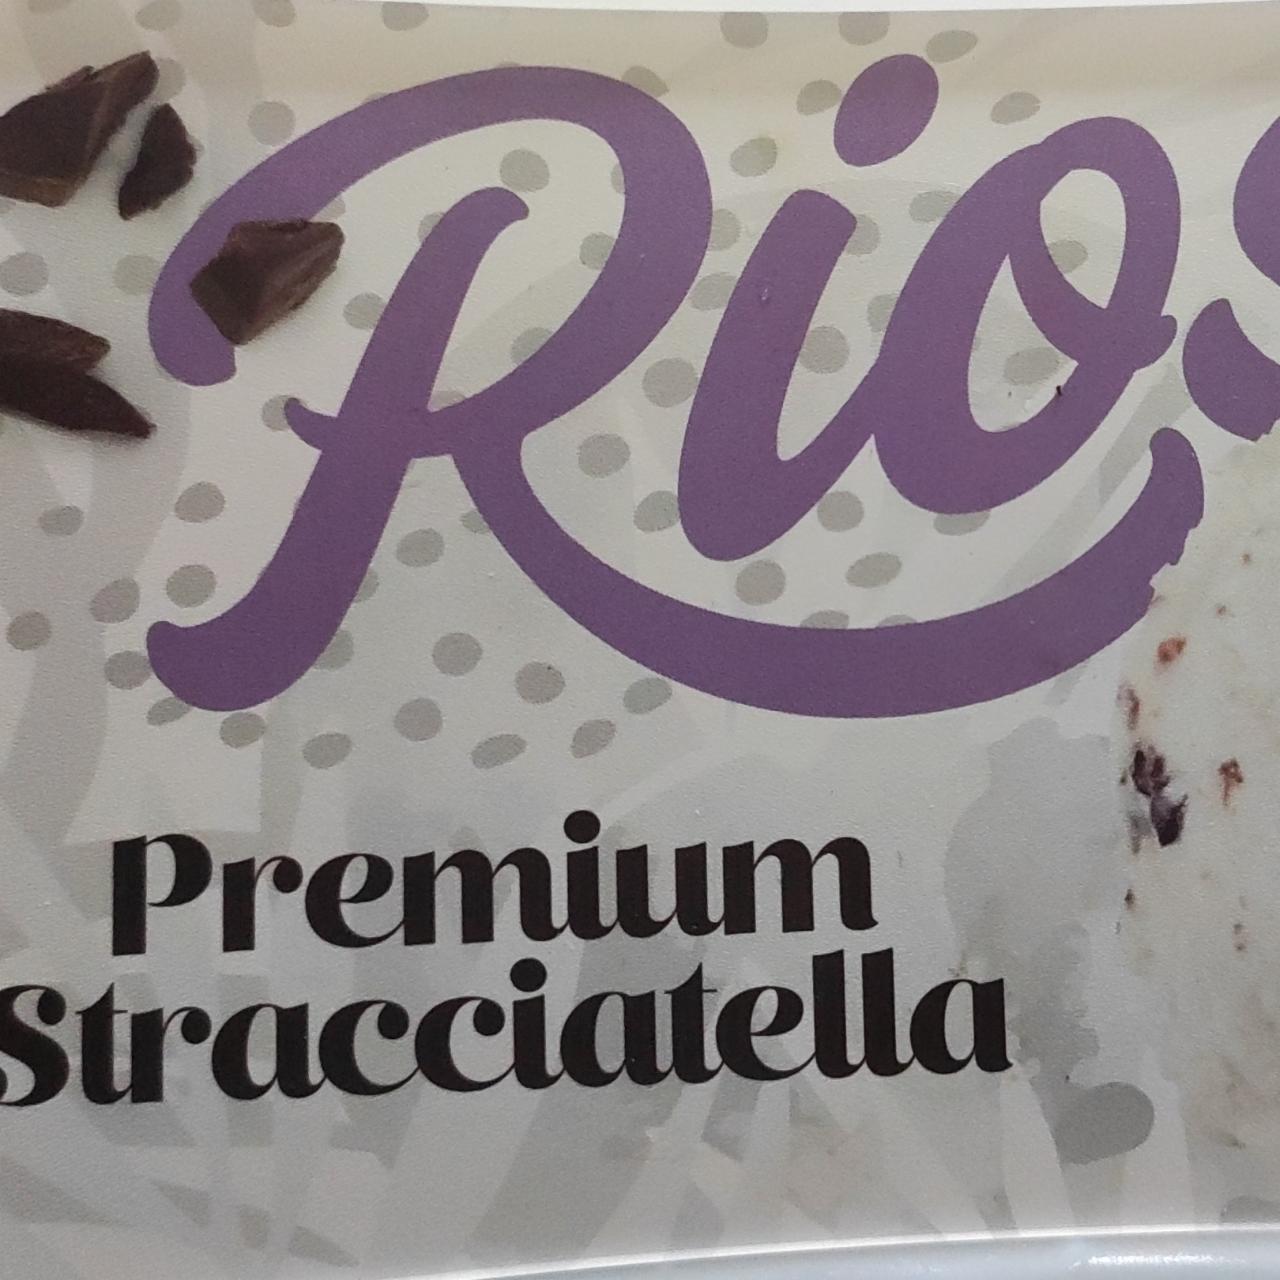 Képek - Premium Stracciatella jégkrém Rios